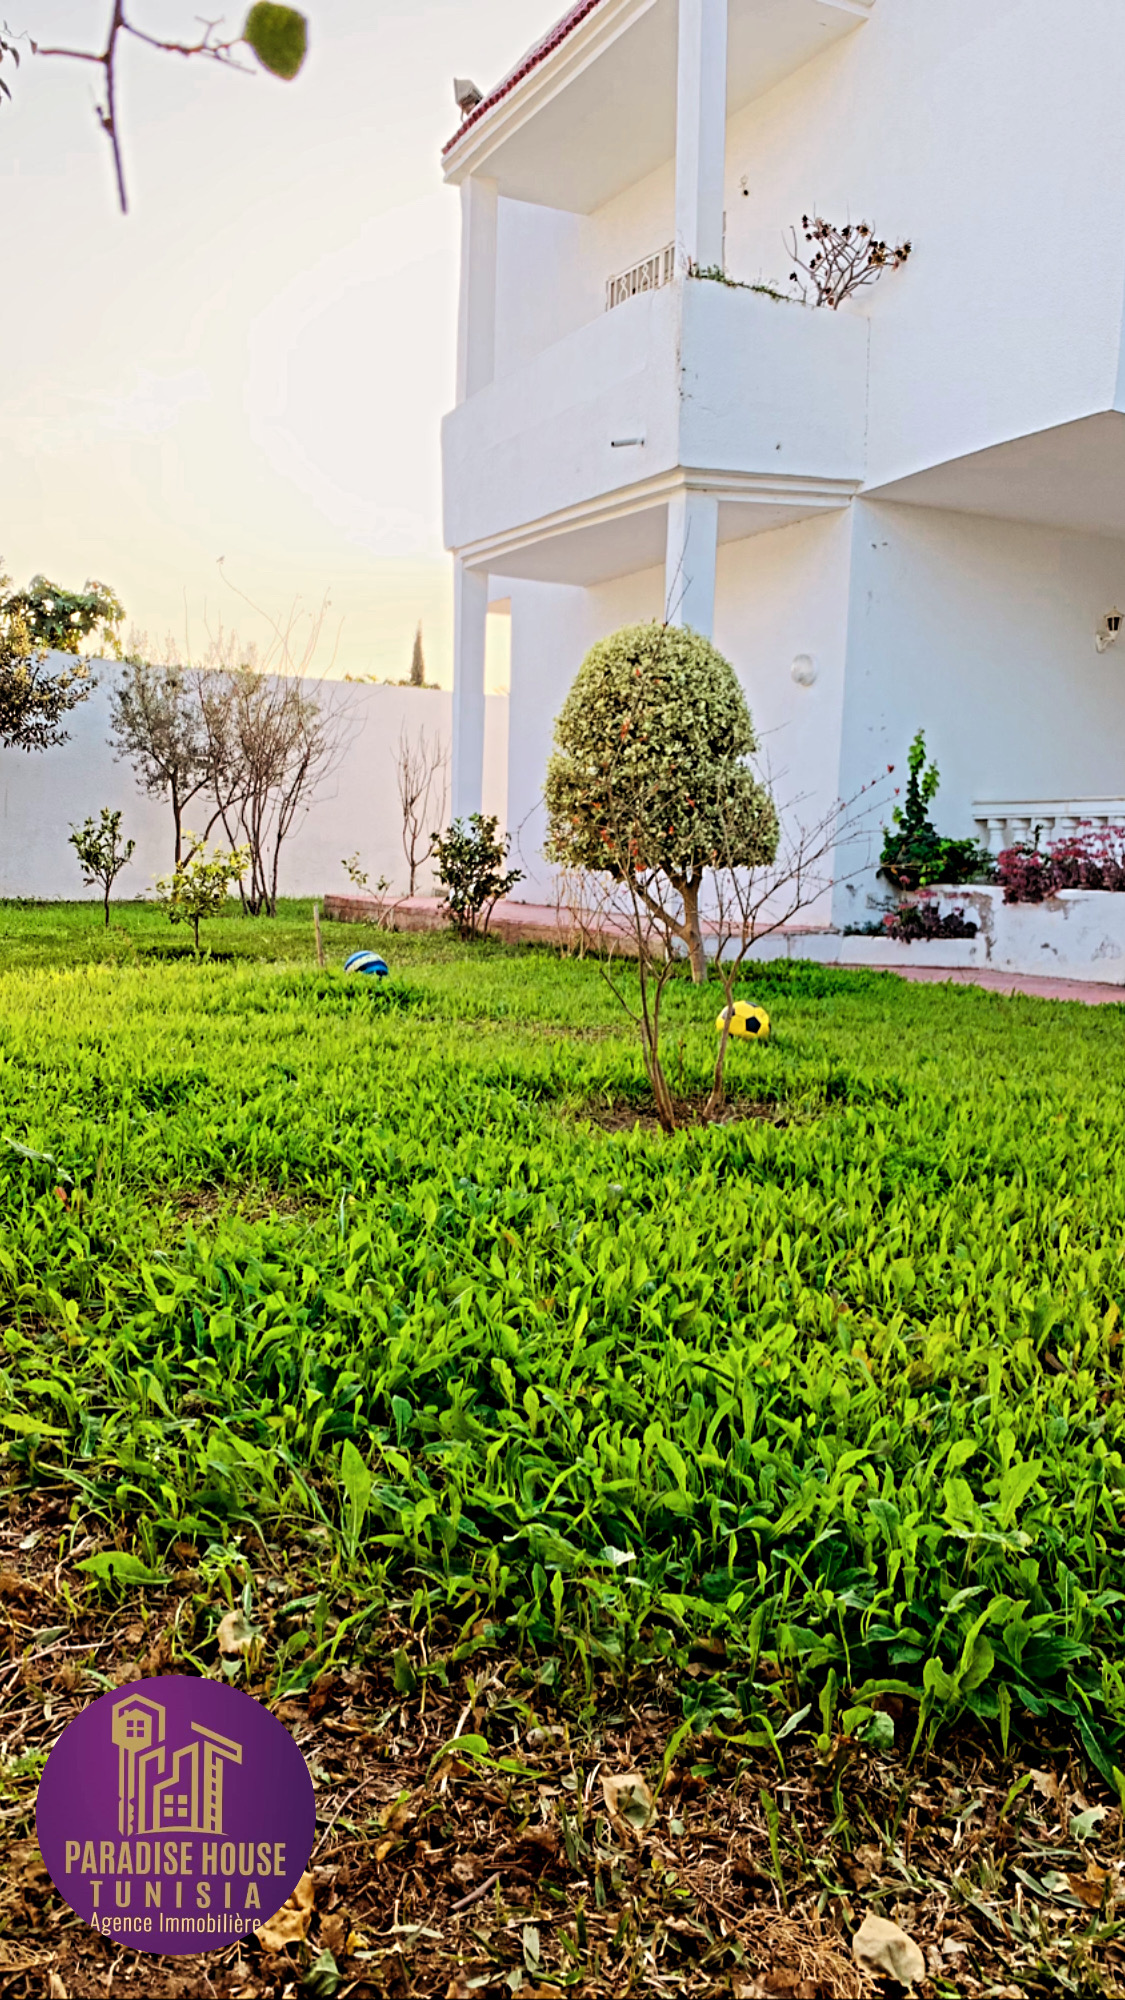 La Soukra Chotrana 1 Vente Maisons Villa 800m2 avec jardin et 2 app s 2